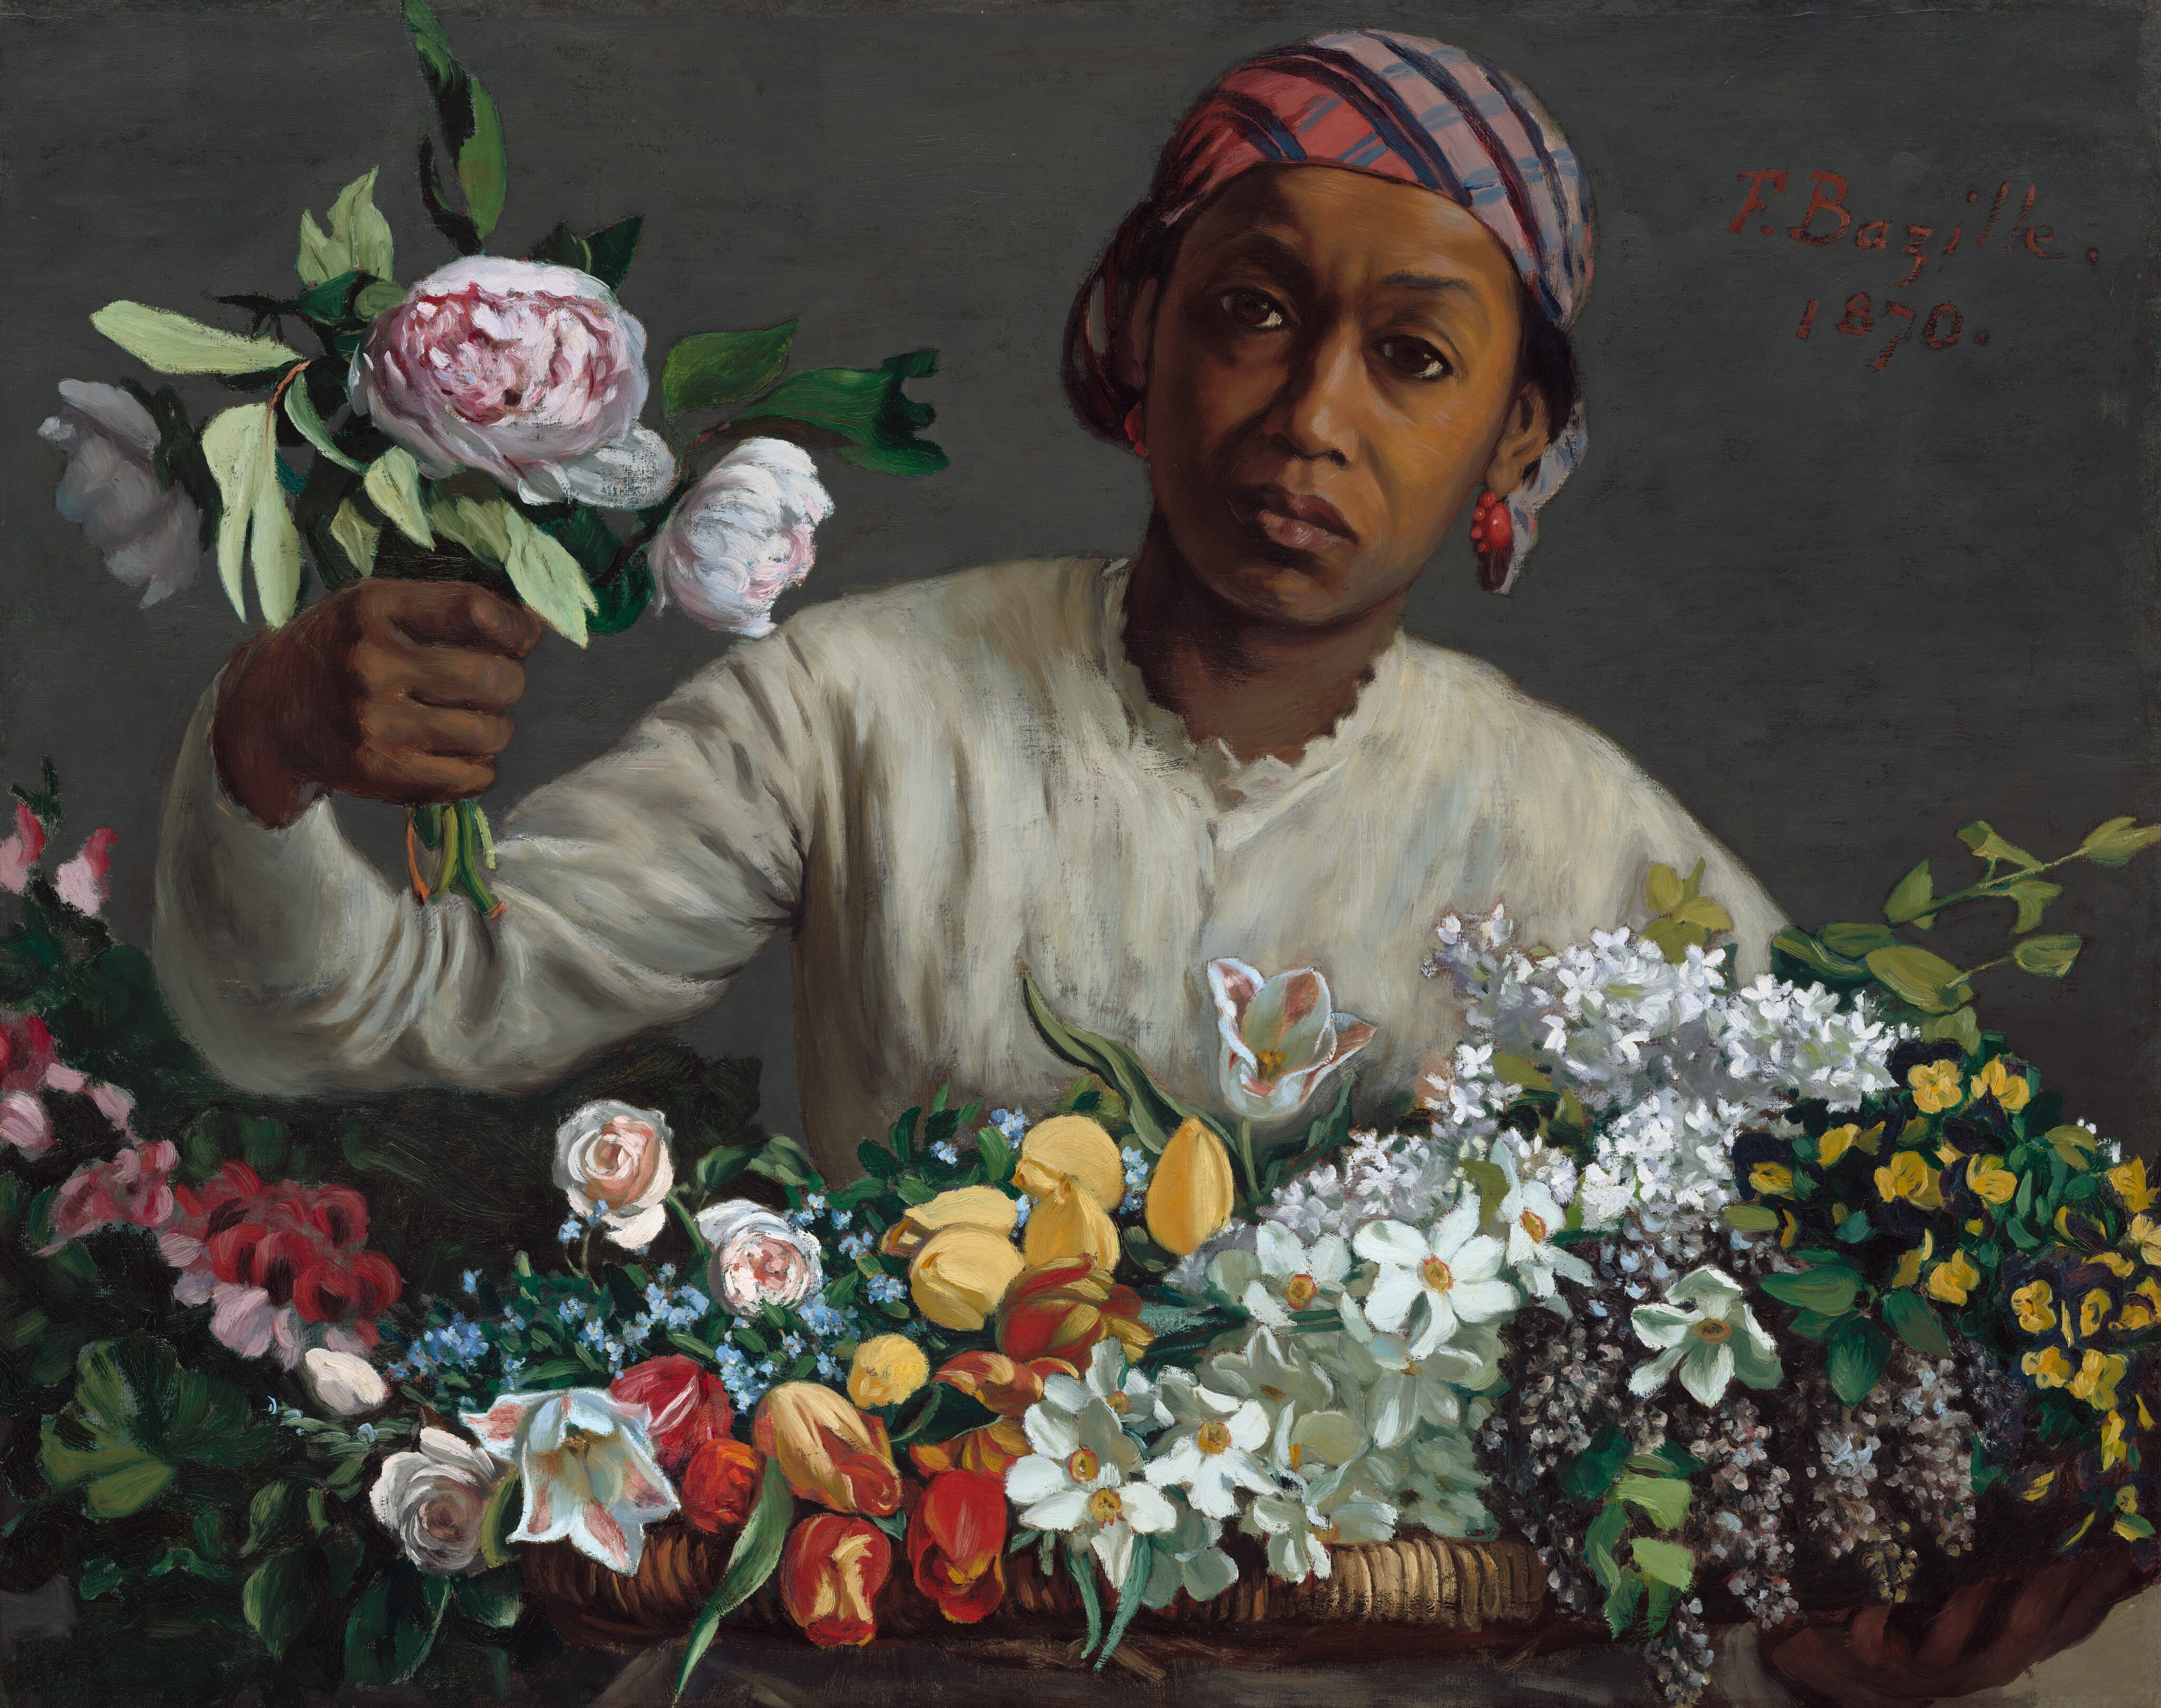 모란꽃을 든 젊은 여인 by Frédéric Bazille - 1870 - 60 x 75 cm 